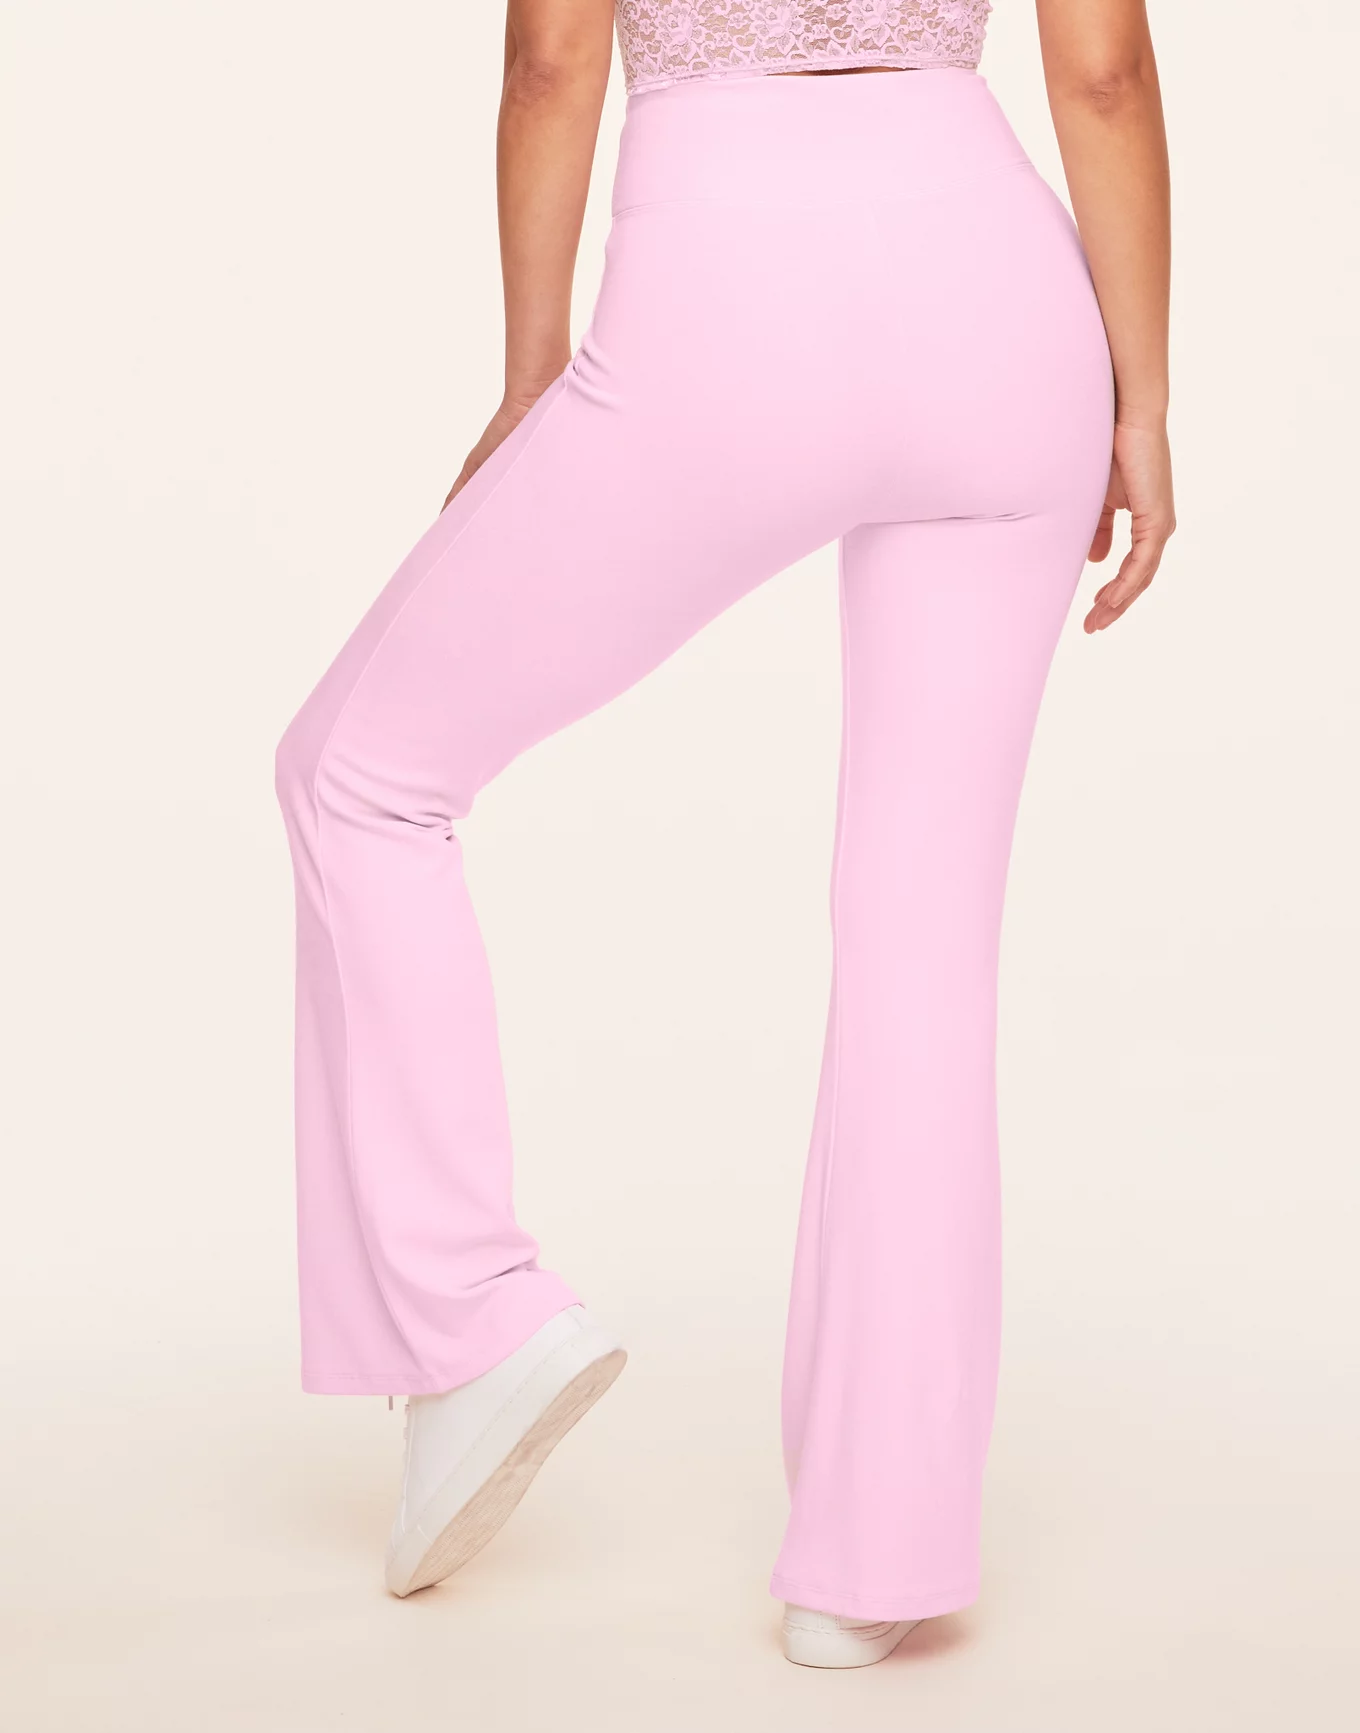 PINK - Victoria's Secret Punk Victoria Secret Flare Yoga Pants Size M